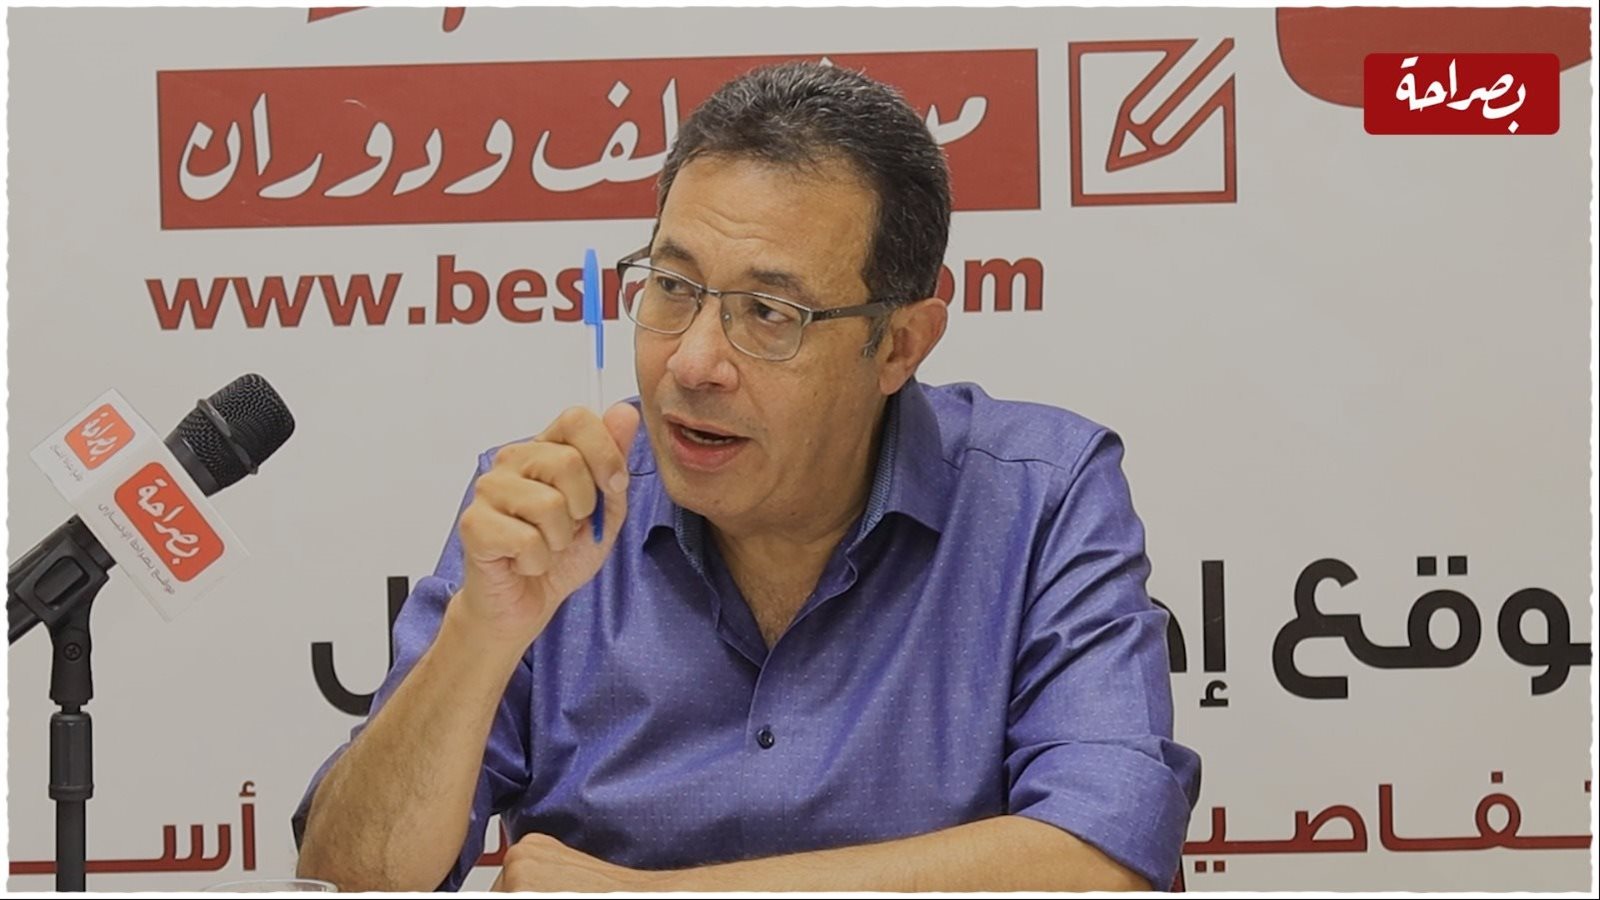  الكاتب الصحفى والإعلامى محمد هانى